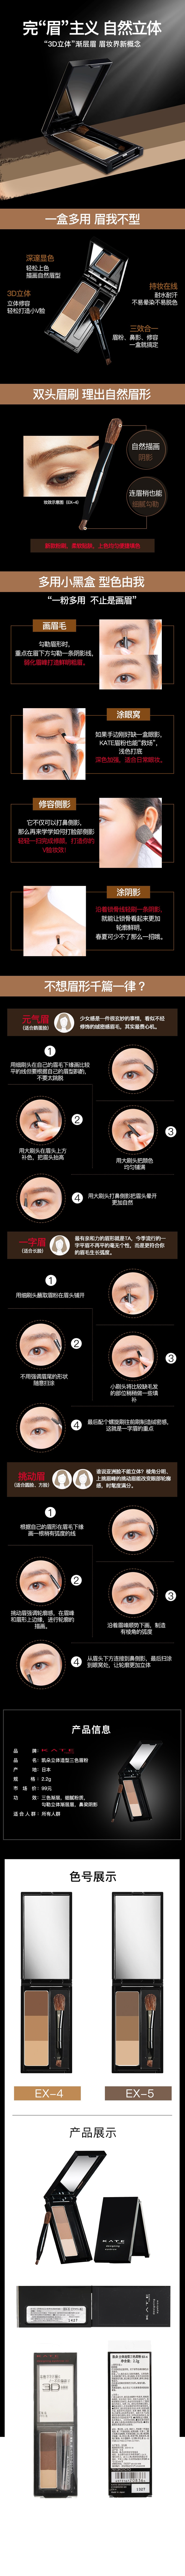 日本KANEBO嘉娜宝 KATE 立体造型三色眉粉 EX-5棕色 适合深棕色/黑色发色 3g COSME大赏第一位